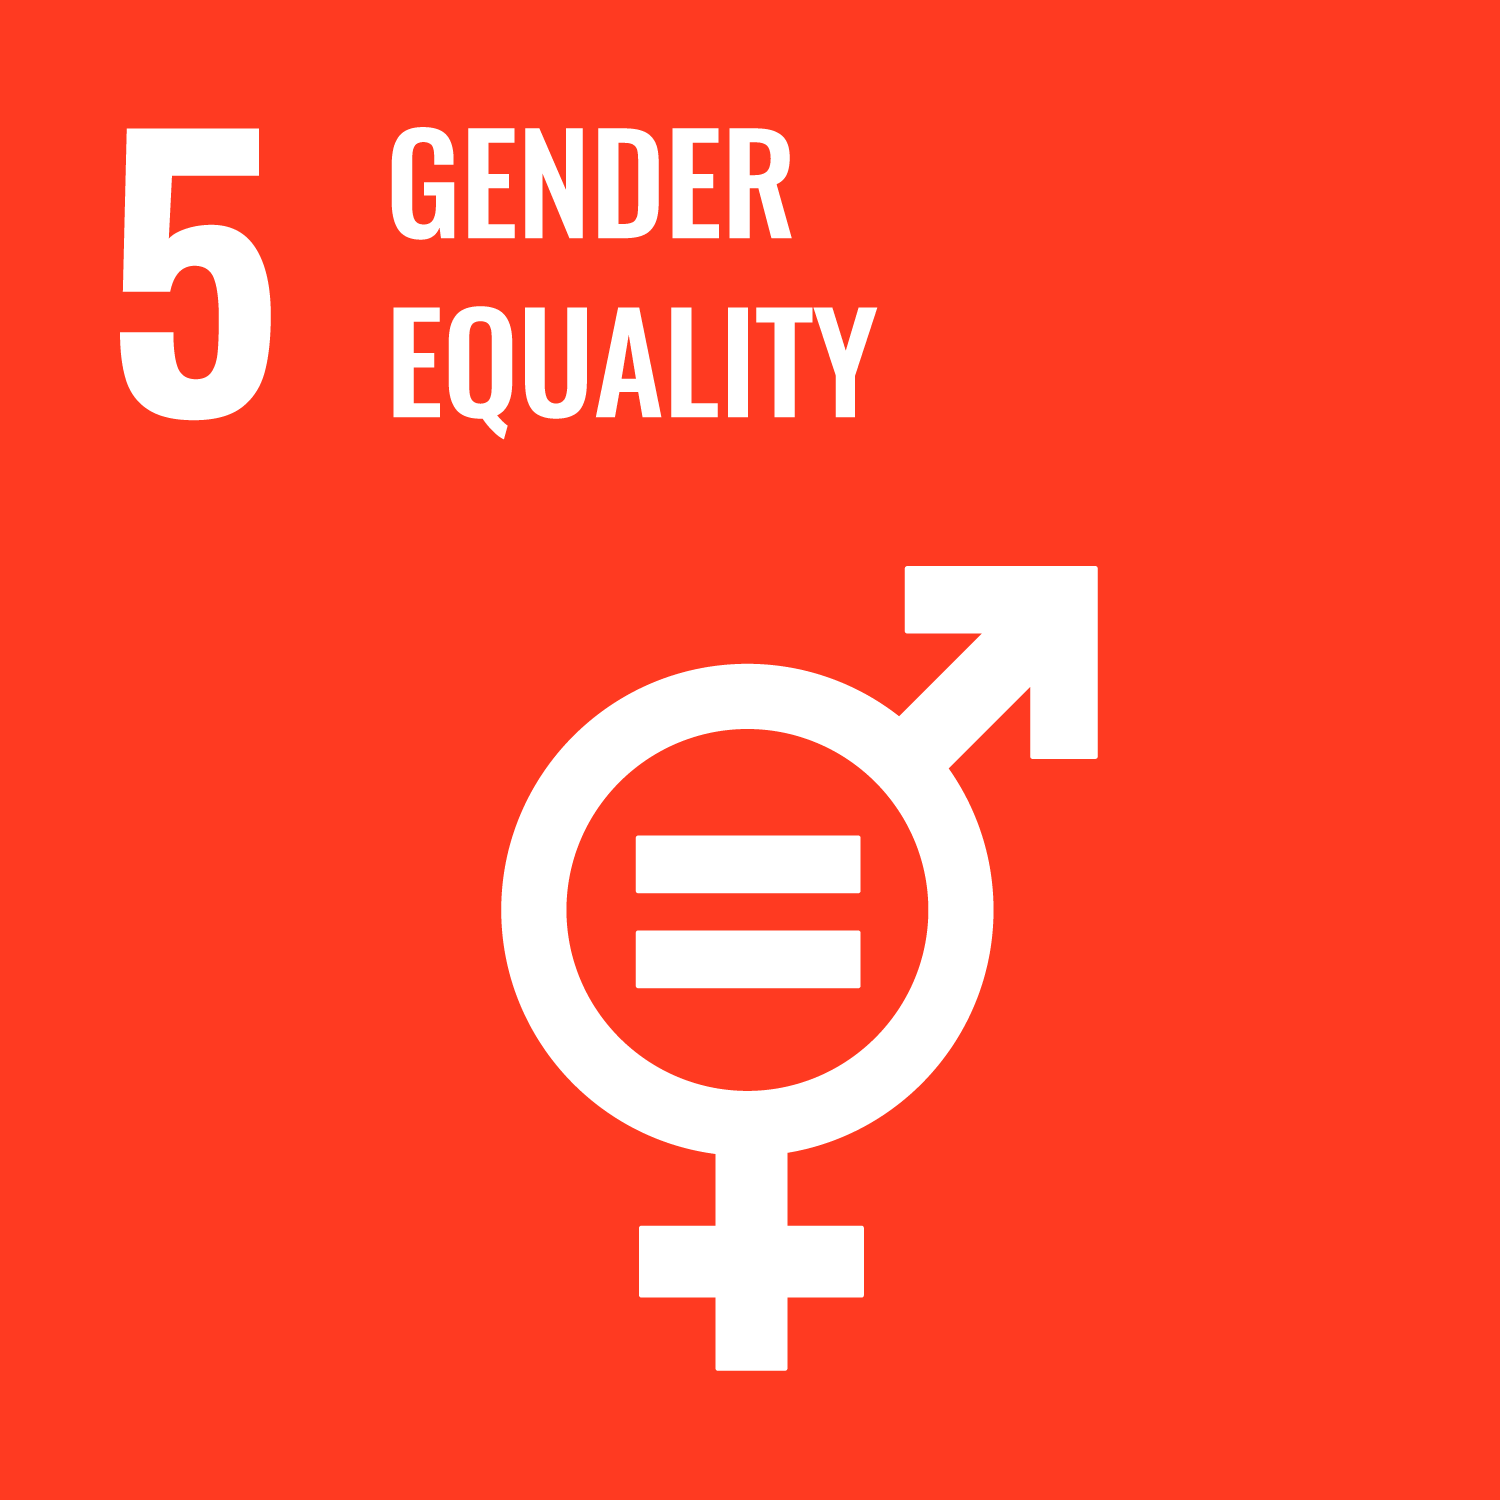 SDG 5 – Gender Equality